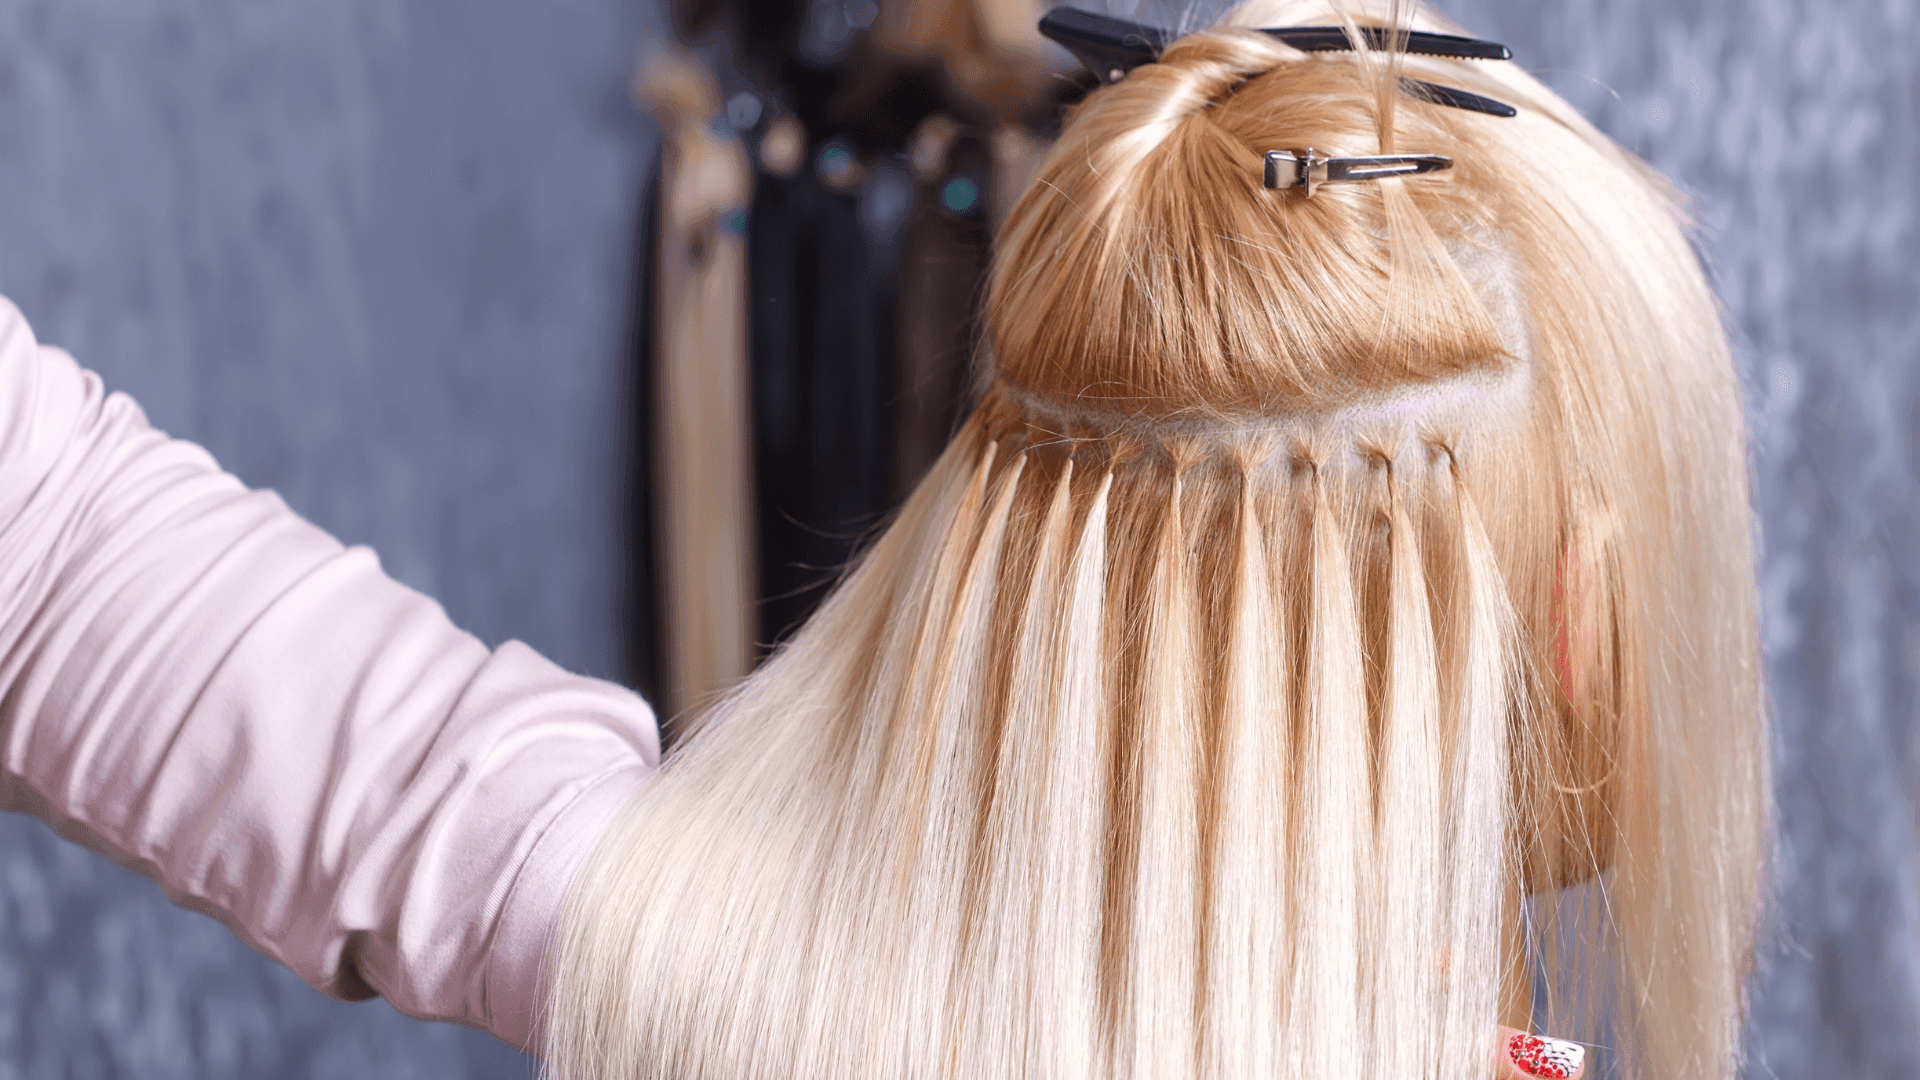 Saiba tudo sobre o Mega Hair: Técnicas, Tipos de Cabelos, Perguntas frequentes e muito mais!